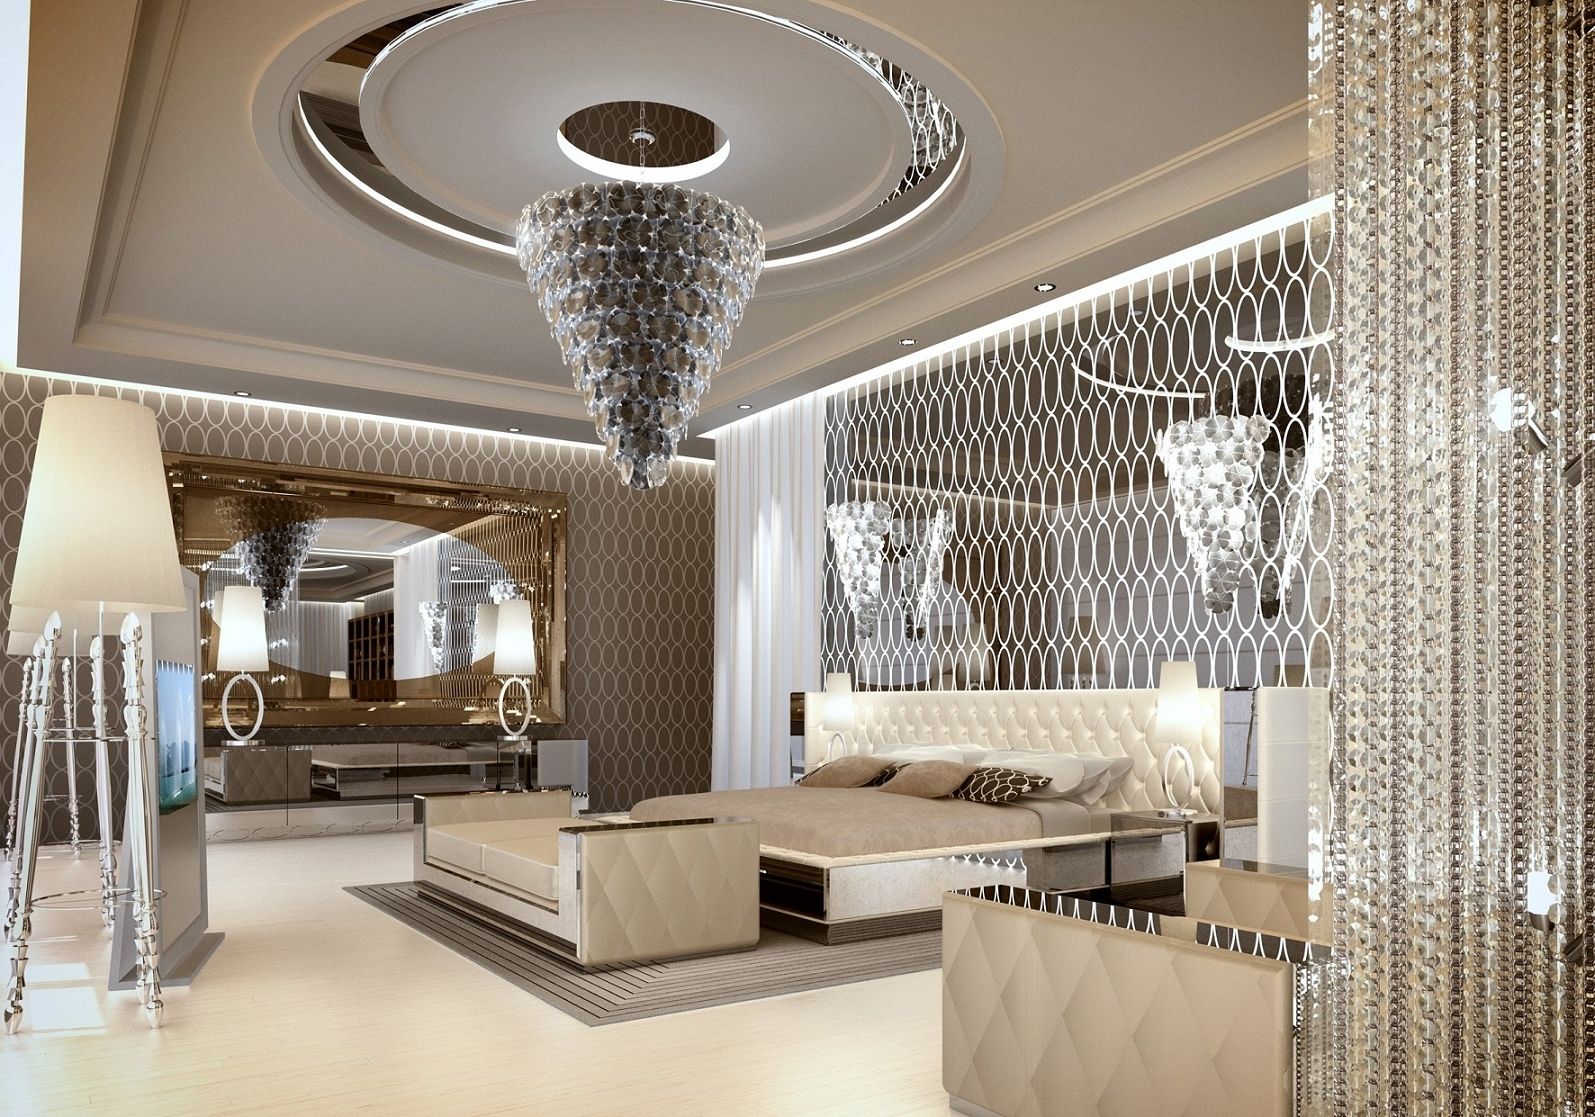 2019 Luxury Bedrooms With Magnificent Chandeliers In Bedroom Chandeliers (View 2 of 20)